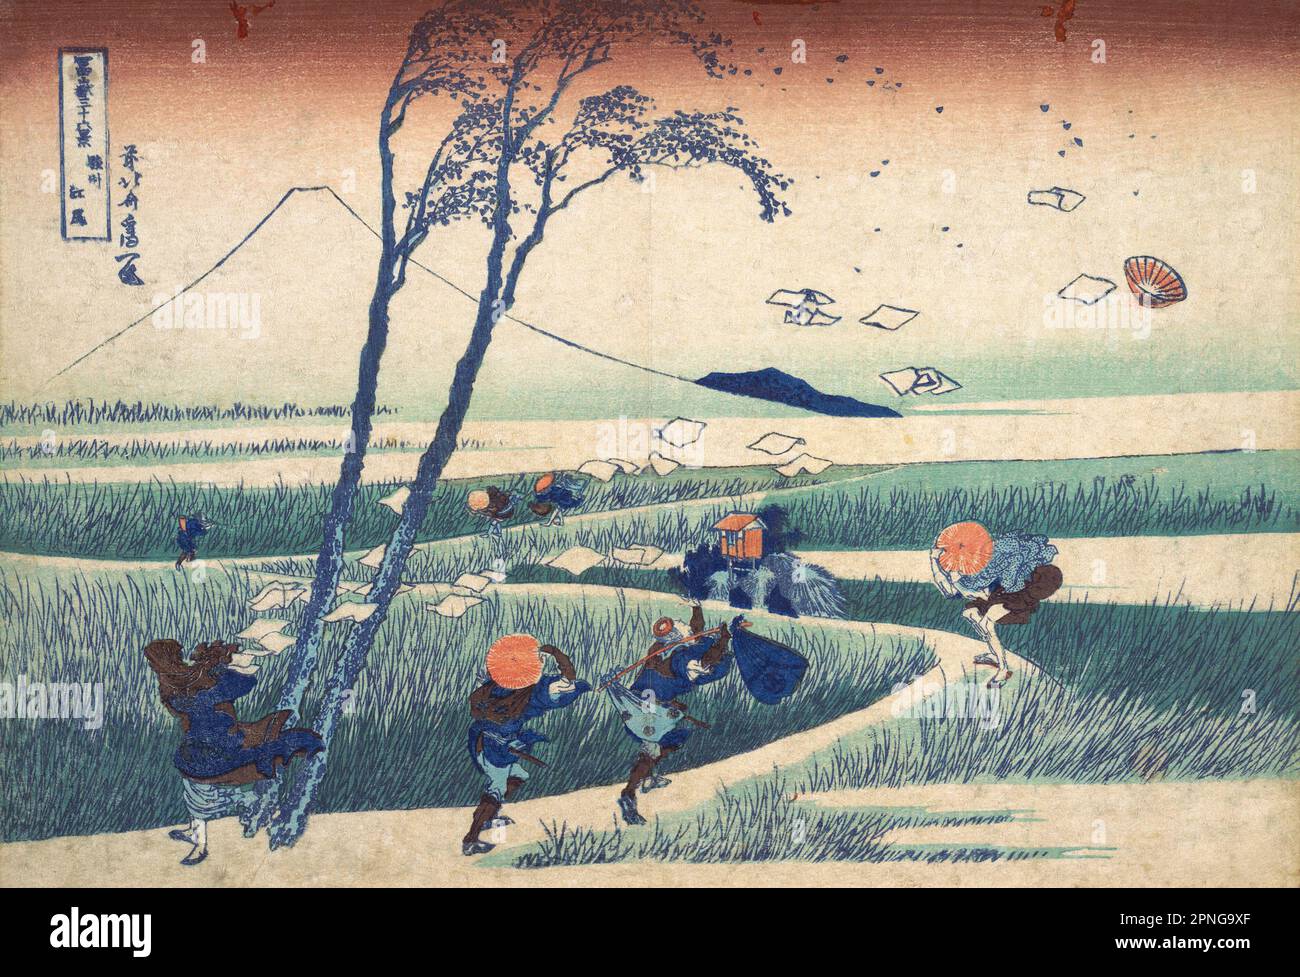 Japan: „‘Ejiri in der Provinz Suruga“. Ukiyo-e Holzschnitt aus der Serie ‘Thirty-Six views of Mount Fuji’ von Katsushika Hokusai (31. Oktober 1760 - 10. Mai 1849), 1830. ‘Thirty-Six Views of Mount Fuji’ ist eine Serie von Holzschnitten der japanischen Künstlerin Katsushika Hokusai, die „Sukiyo-e“ ‘. Die Serie zeigt den Fuji in unterschiedlichen Jahreszeiten und Wetterbedingungen an verschiedenen Orten und Entfernungen. Es besteht tatsächlich aus 46 Drucken, die zwischen 1826 und 1833 entstanden sind. Die ersten 36 wurden in die Originalpublikation aufgenommen, und aufgrund ihrer Popularität wurden nach der Originalpublikation 10 weitere hinzugefügt. Stockfoto